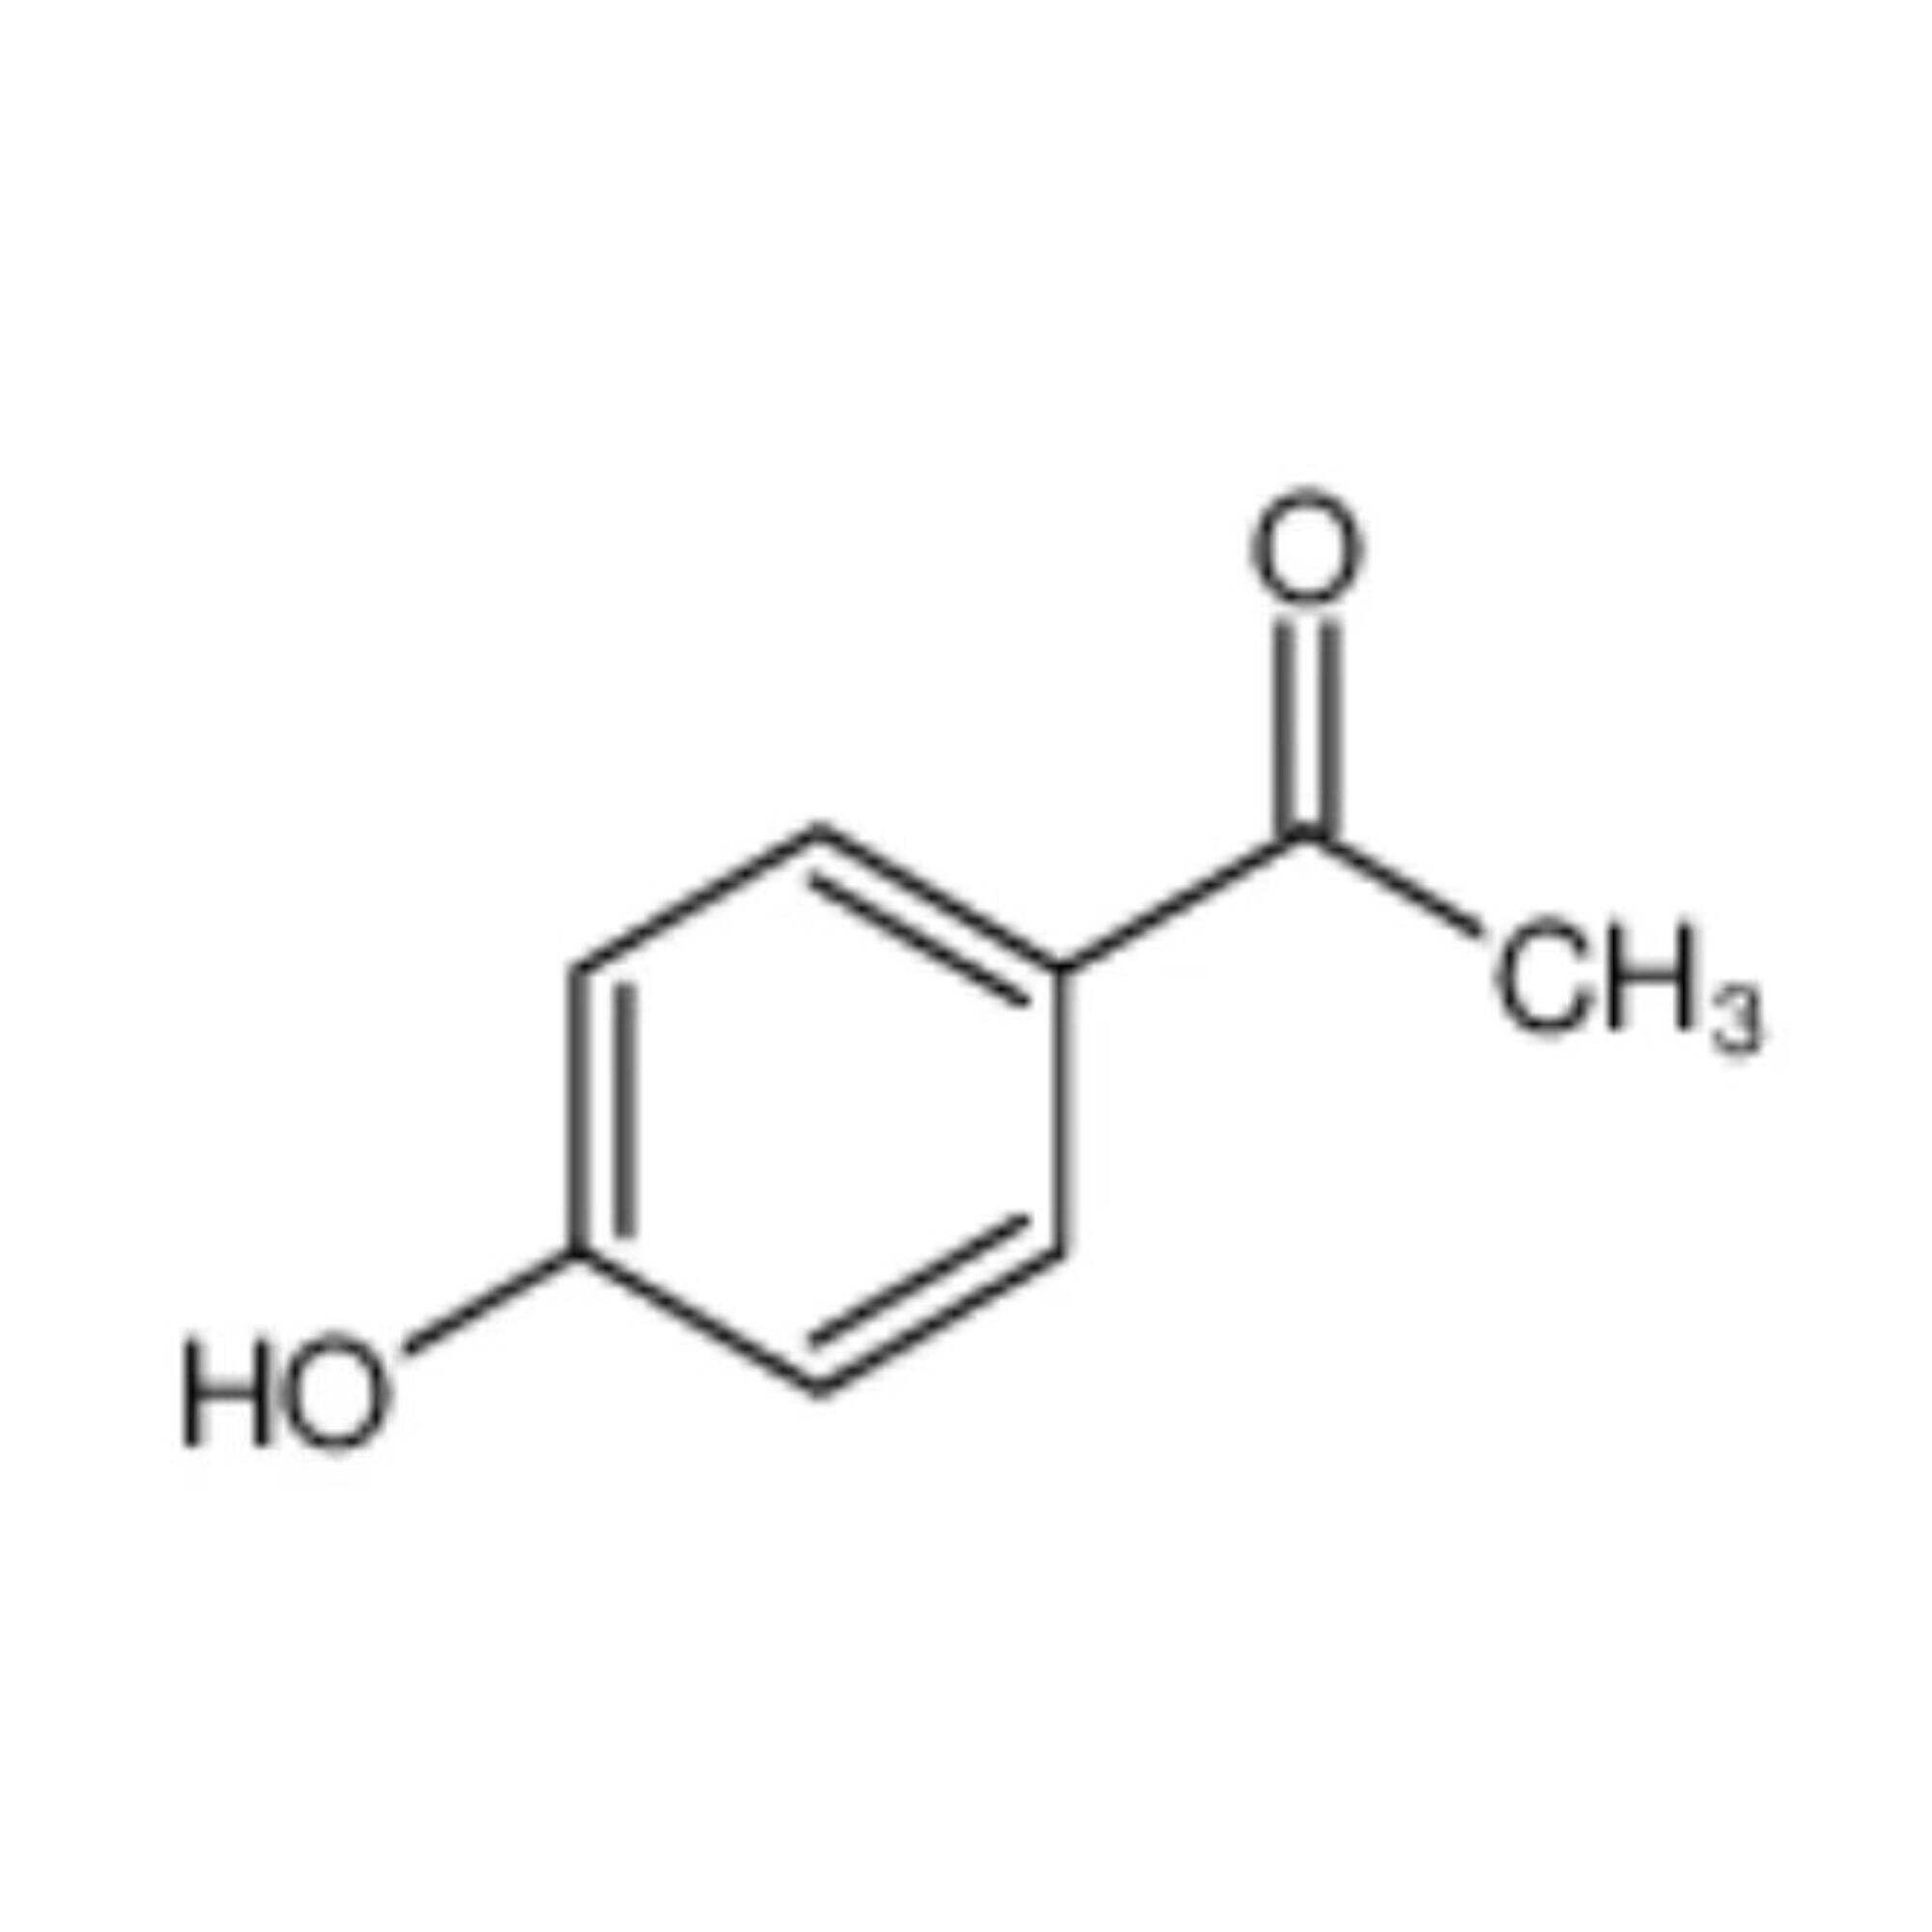 4'-Hydroxyacétophénone